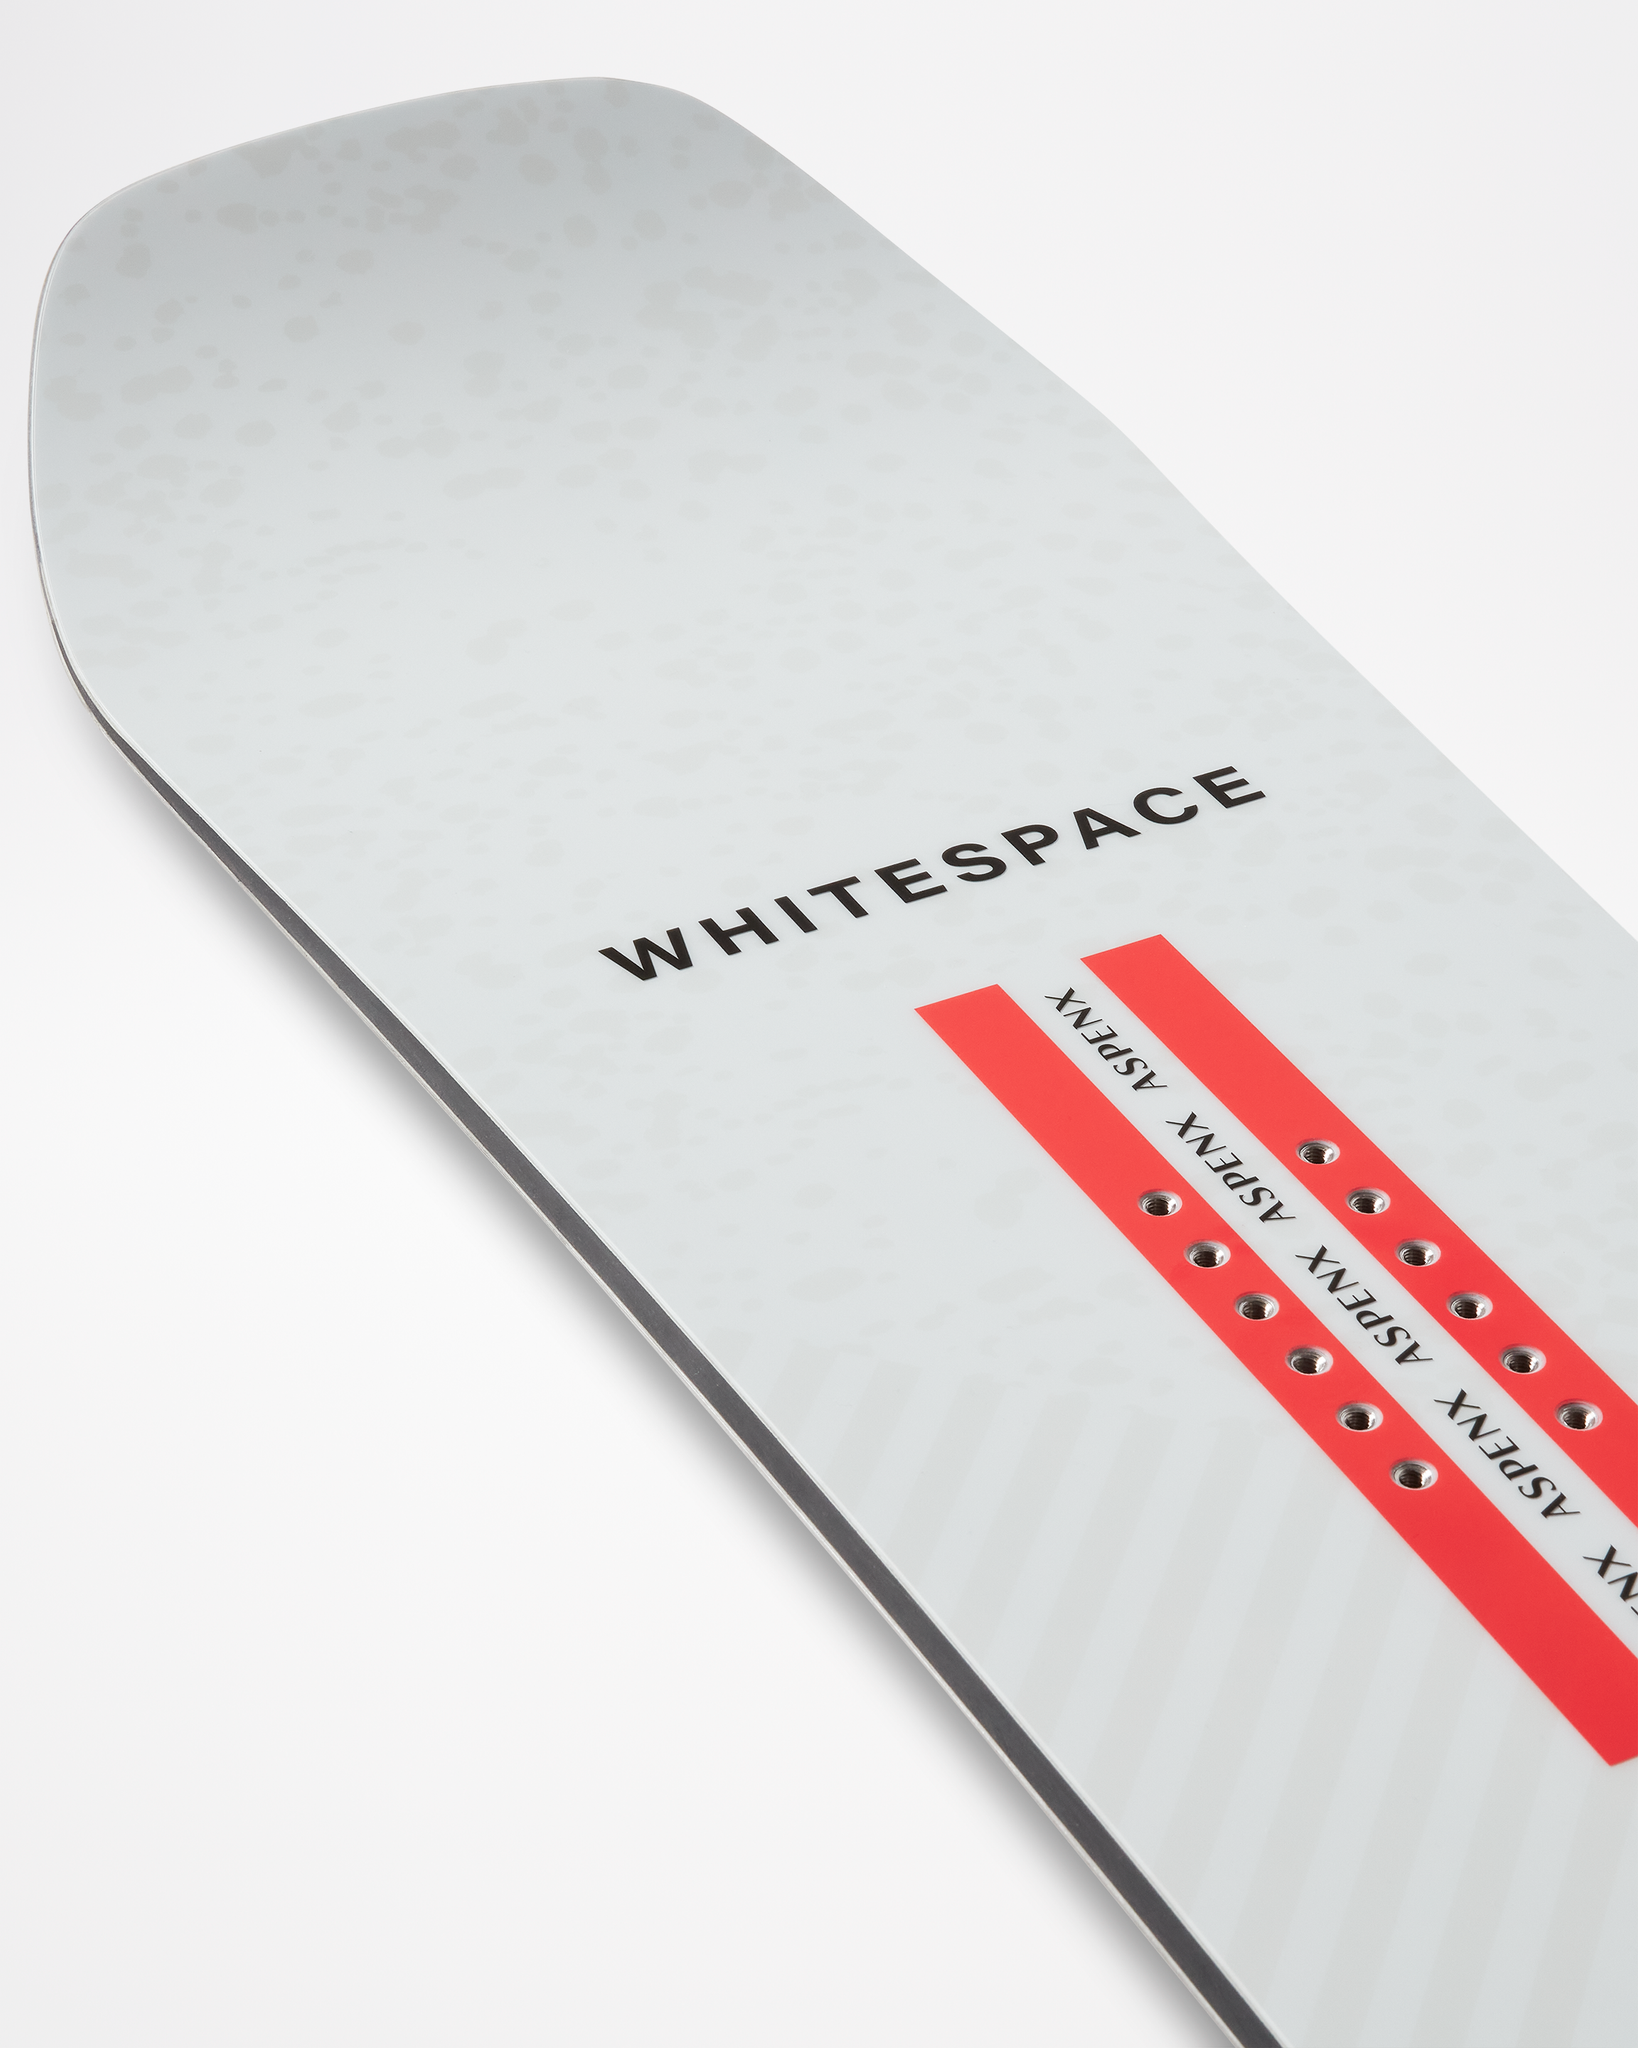 2023 White Space Freestyle Shaun White Pro Snowboard